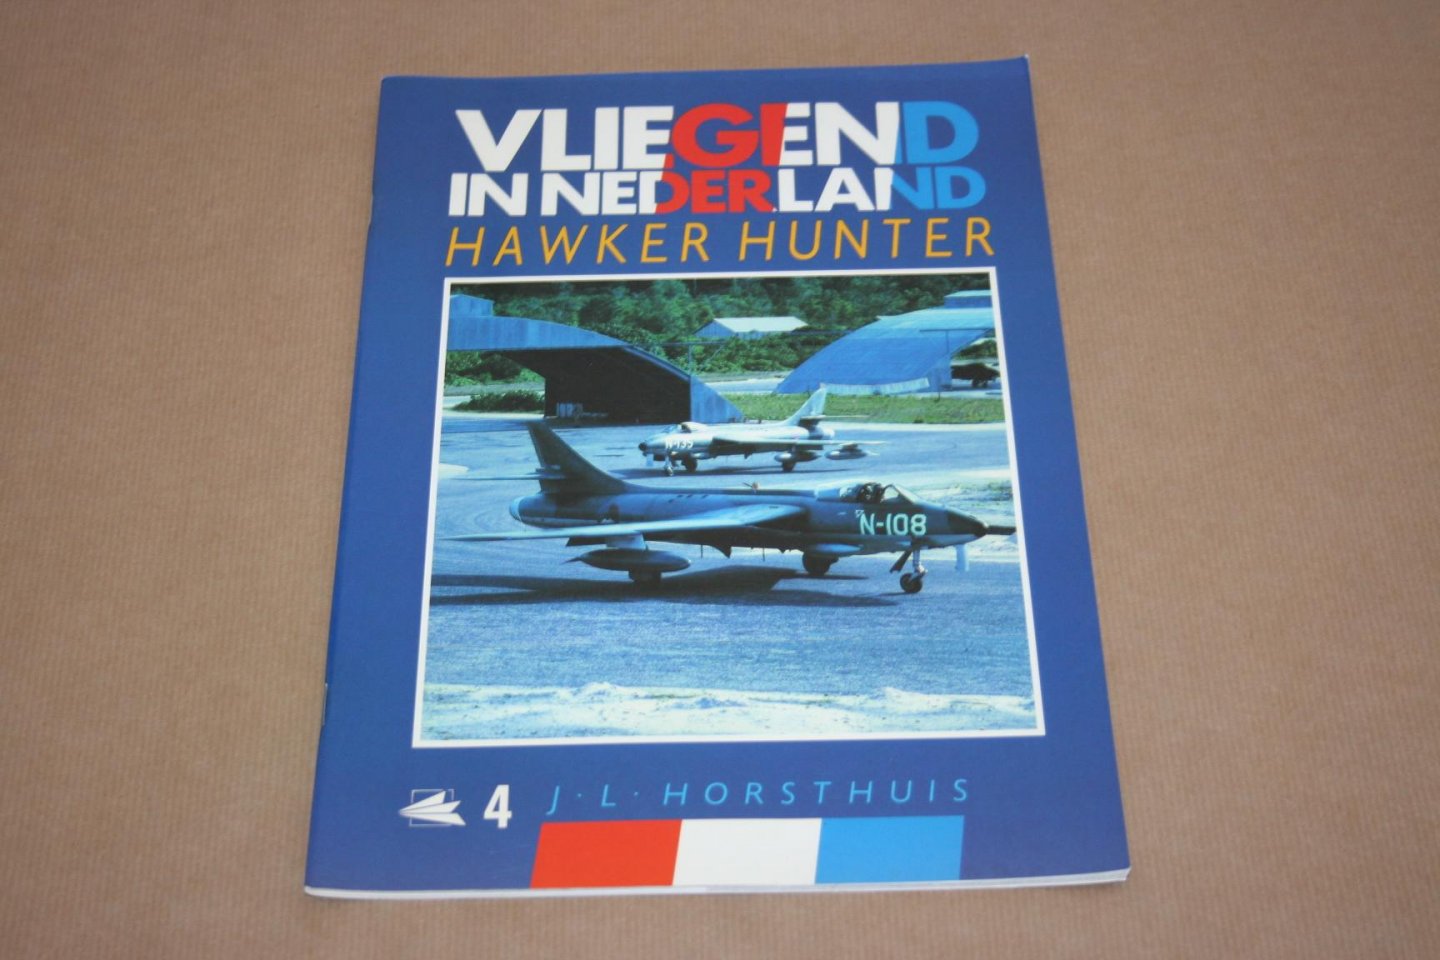 J.L. Horsthuis - Vliegend in Nederland - Hawker Hunter